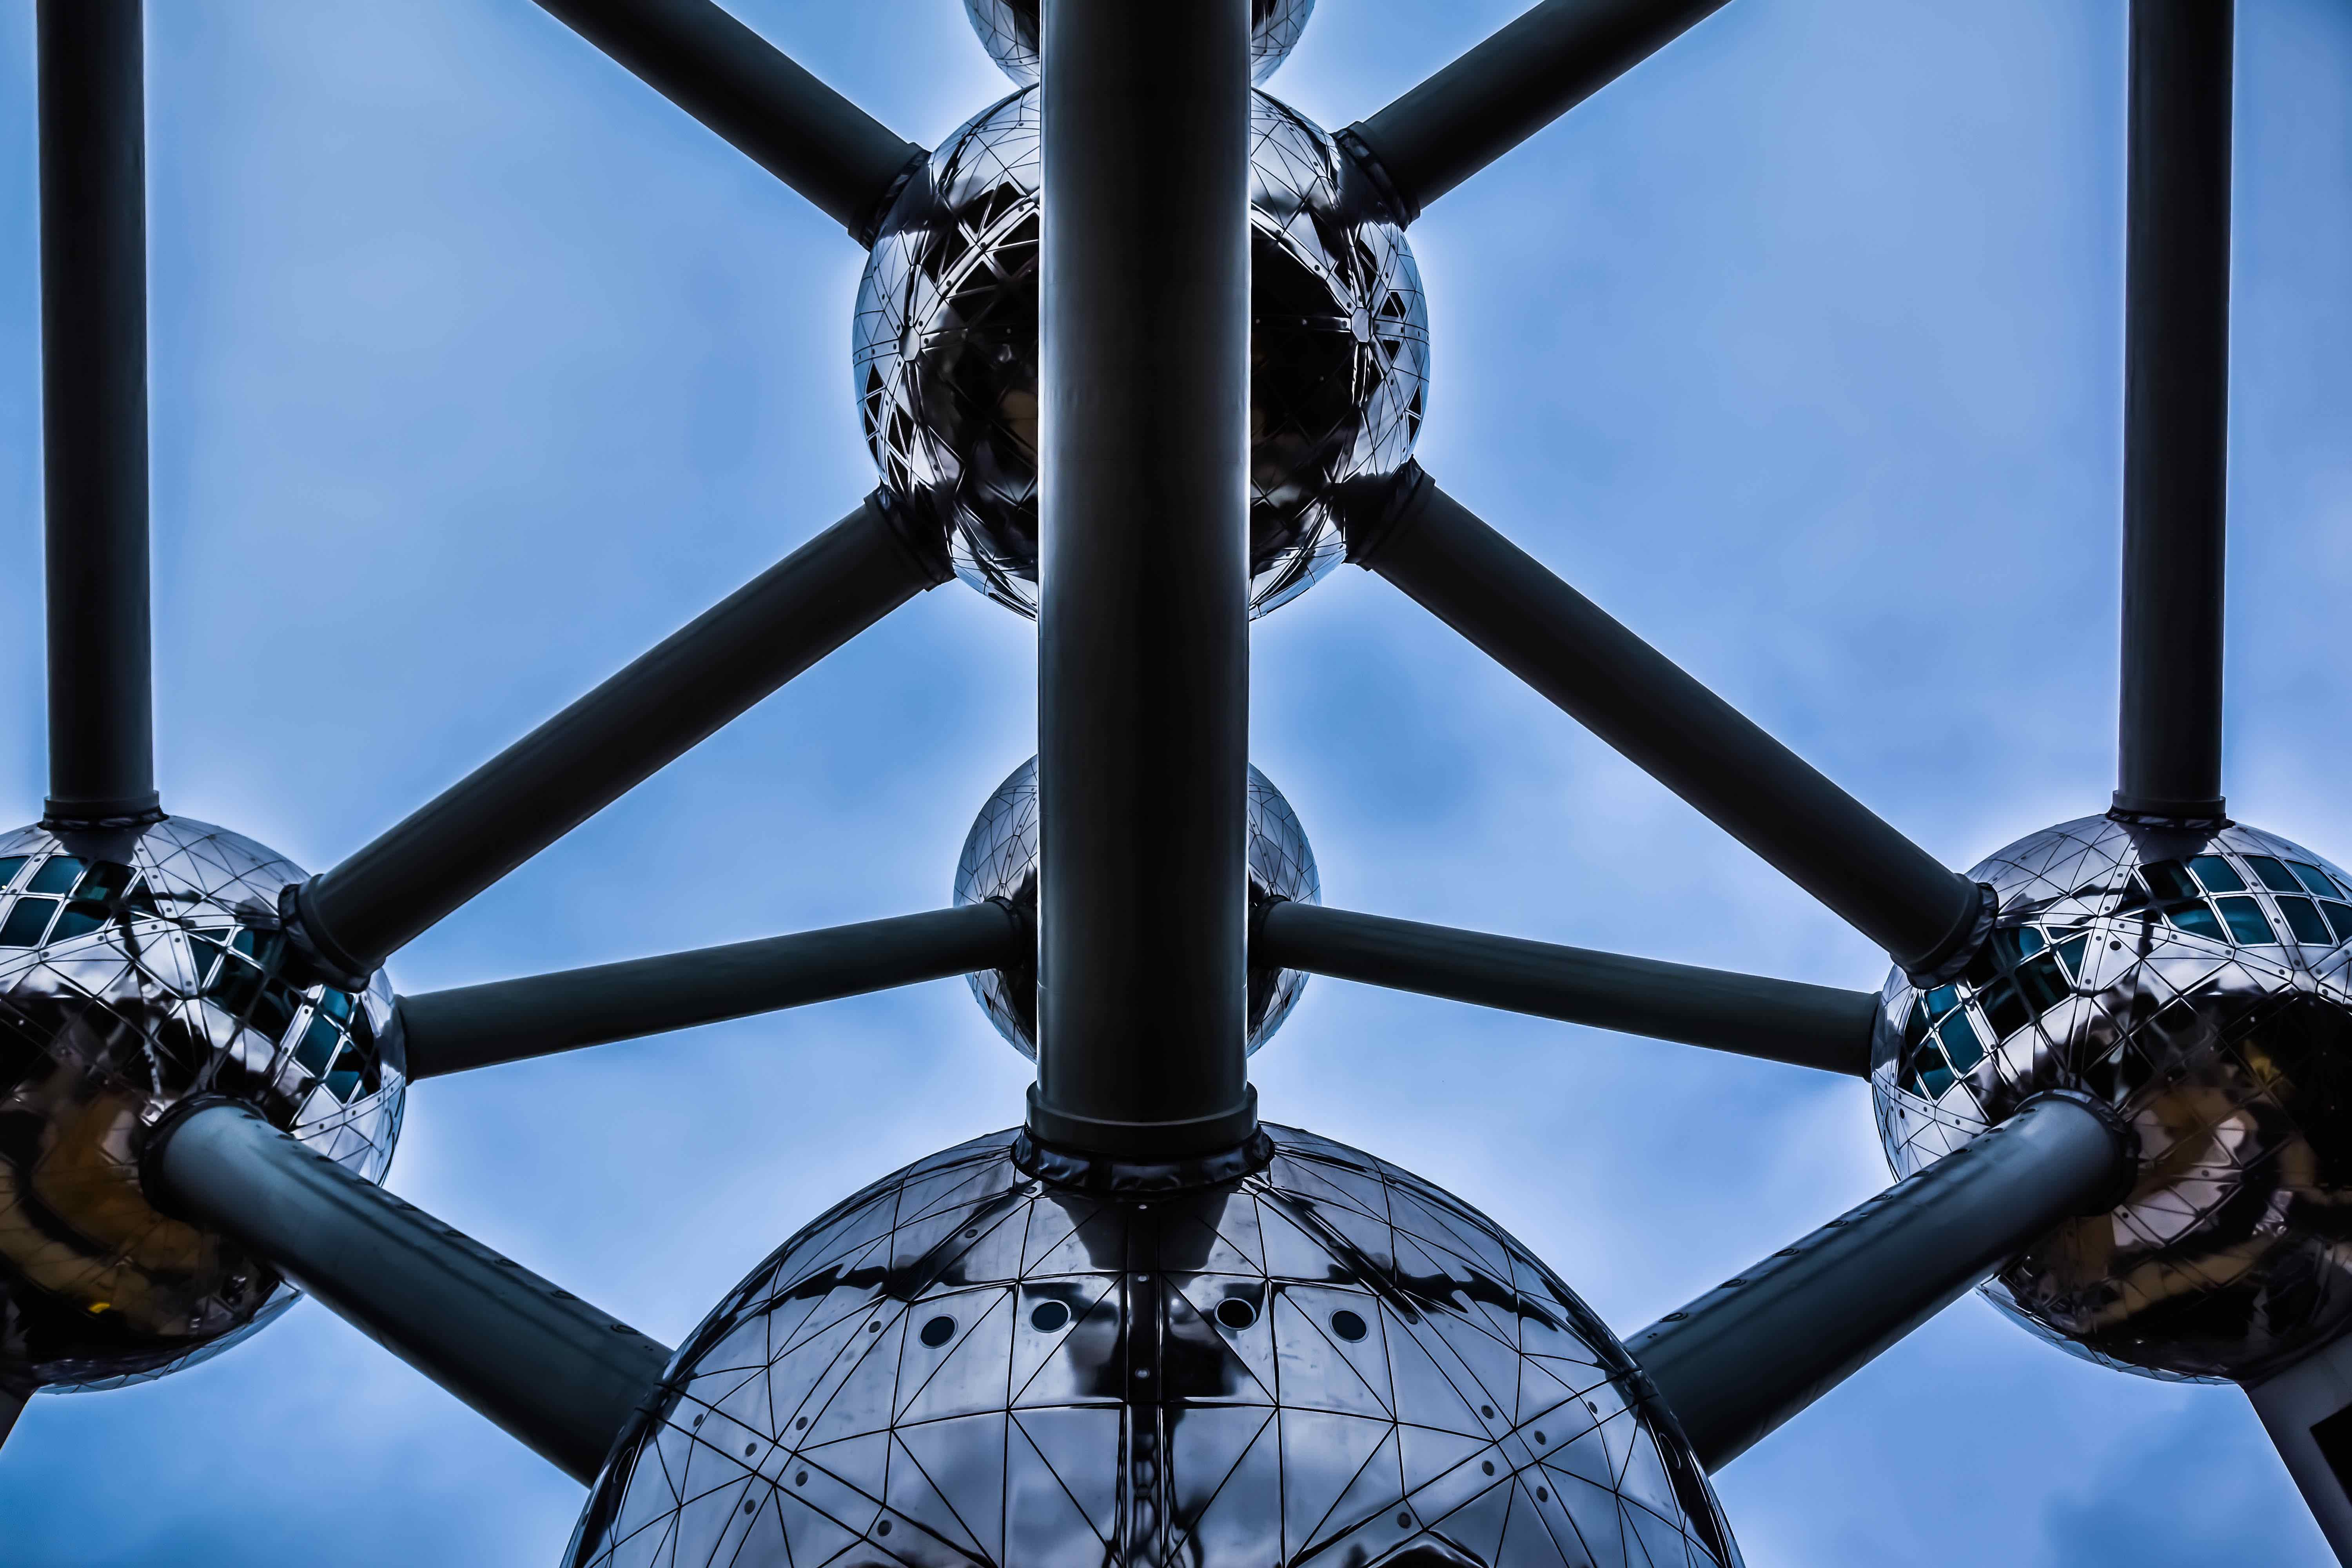 Atomium/ Brussels